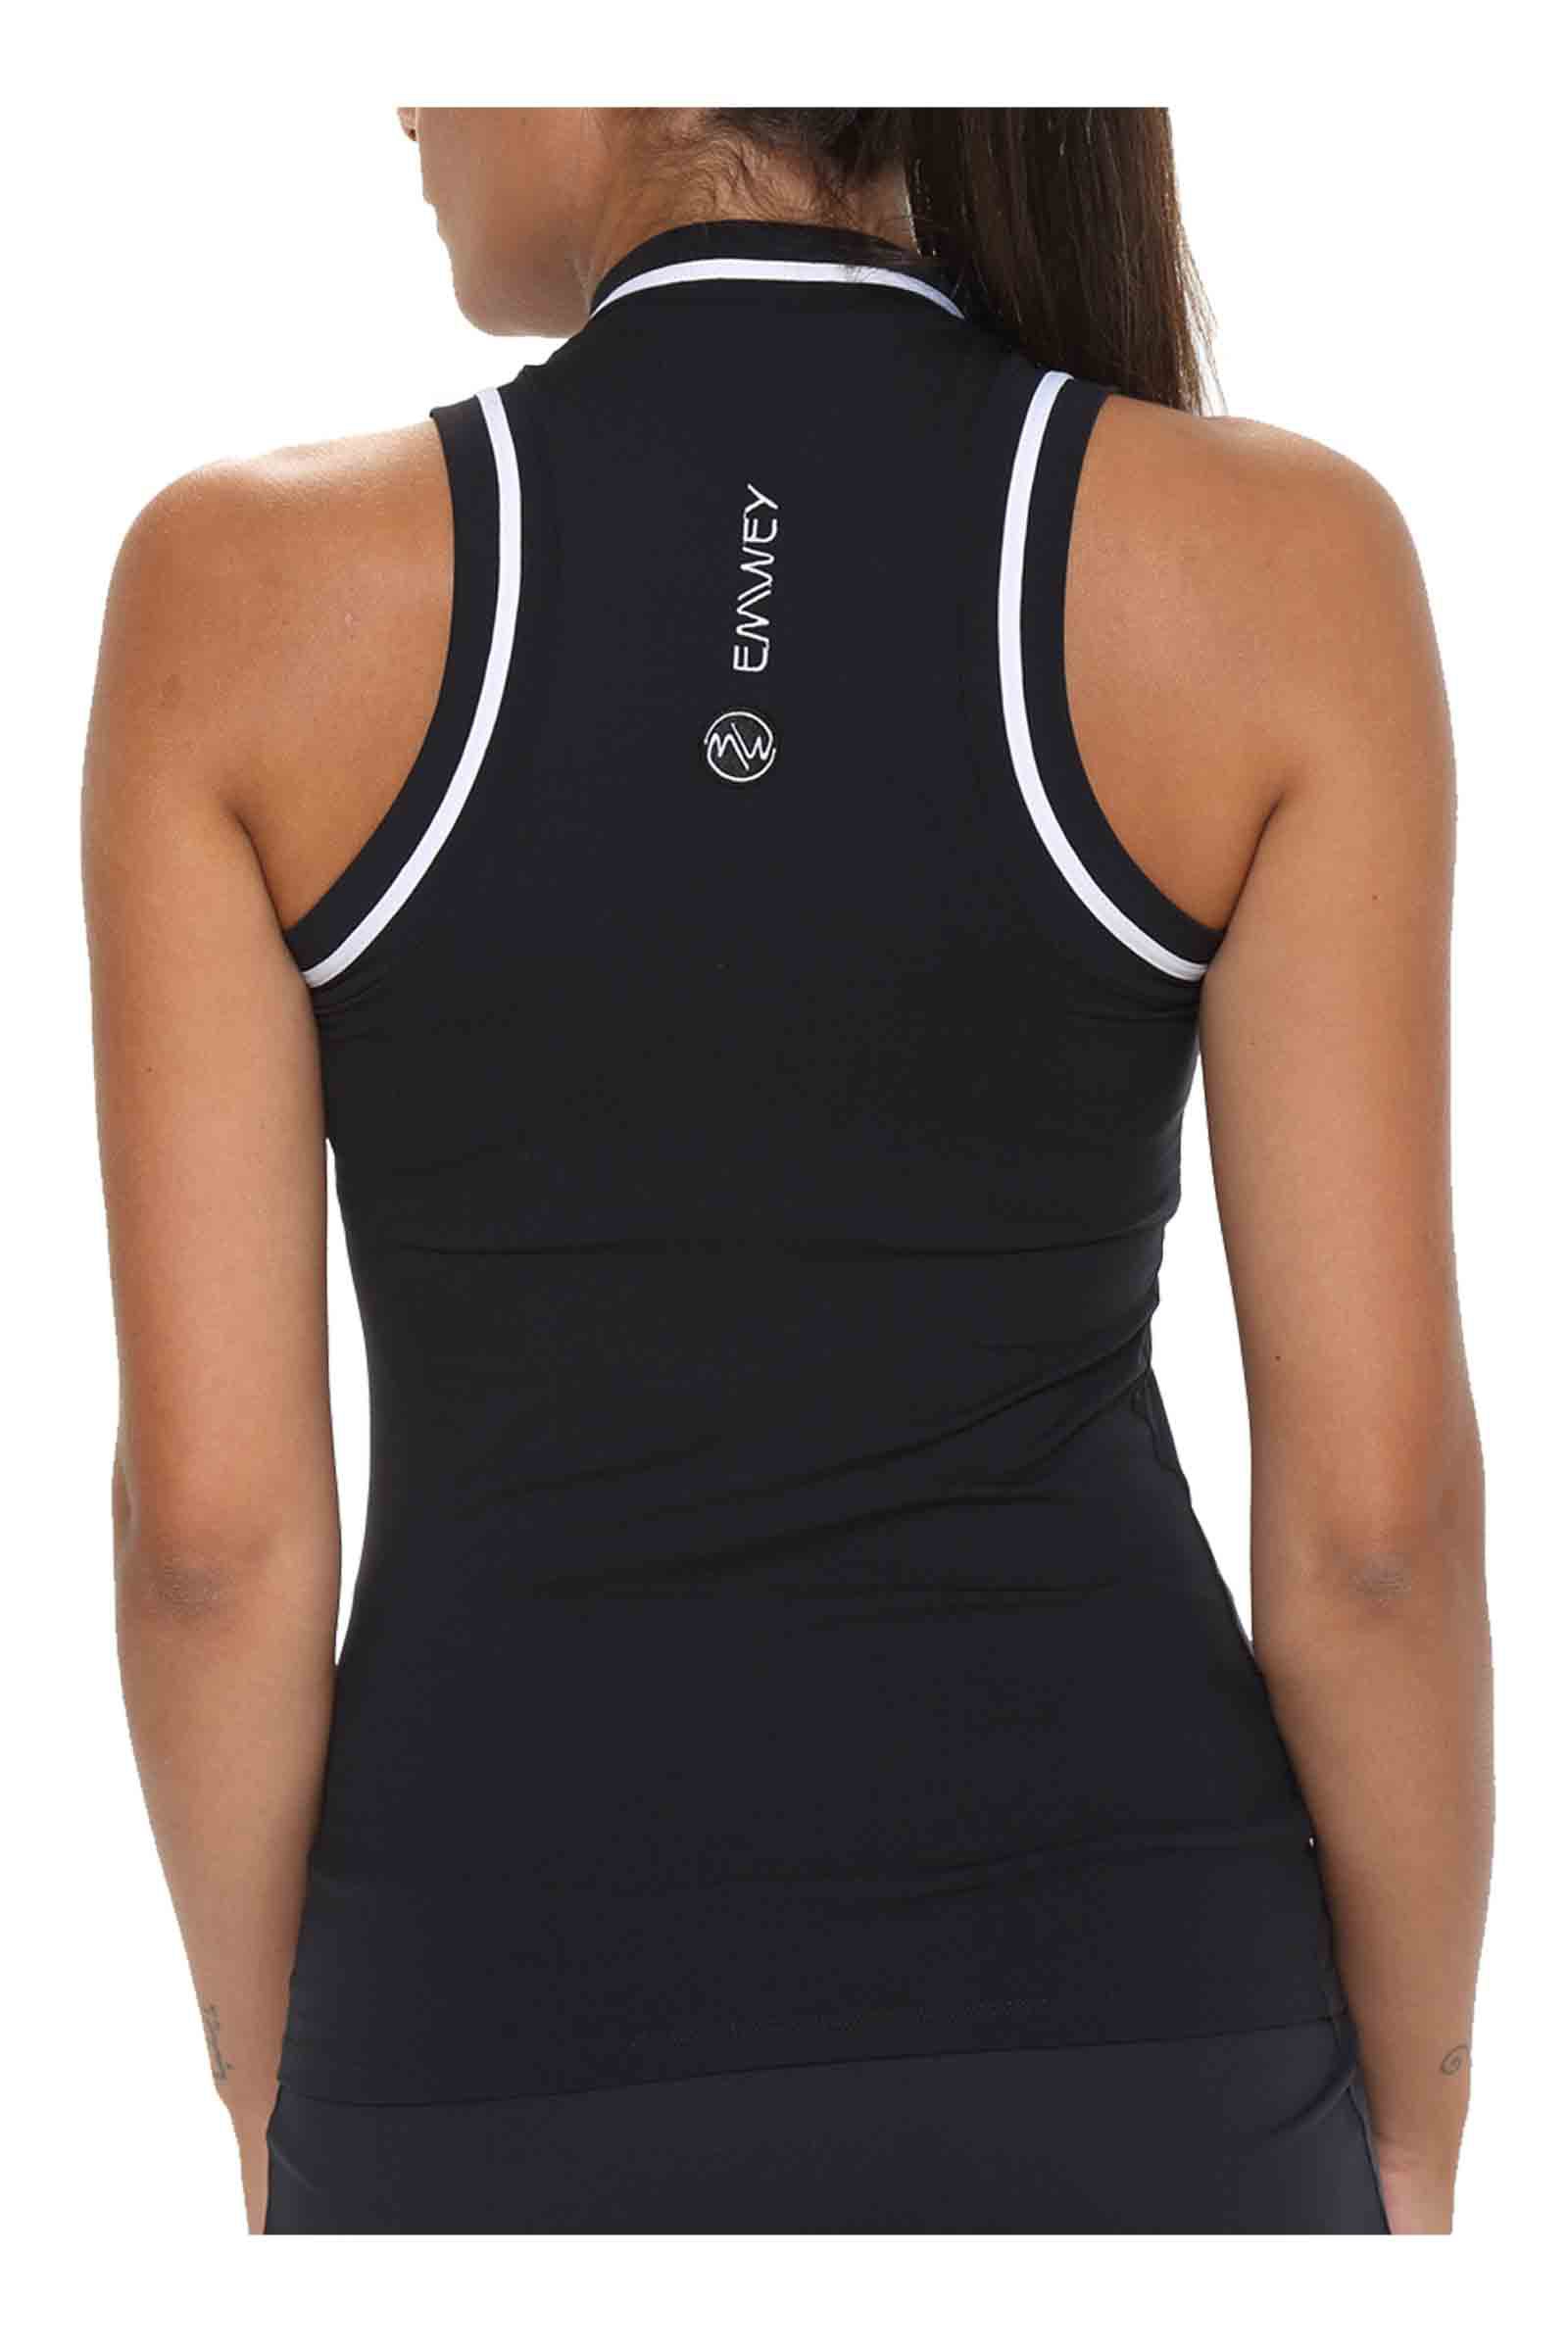 Camiseta Cuello Mao Pádel Mujer A120 Negro Emwey | Pádel y Tenis.